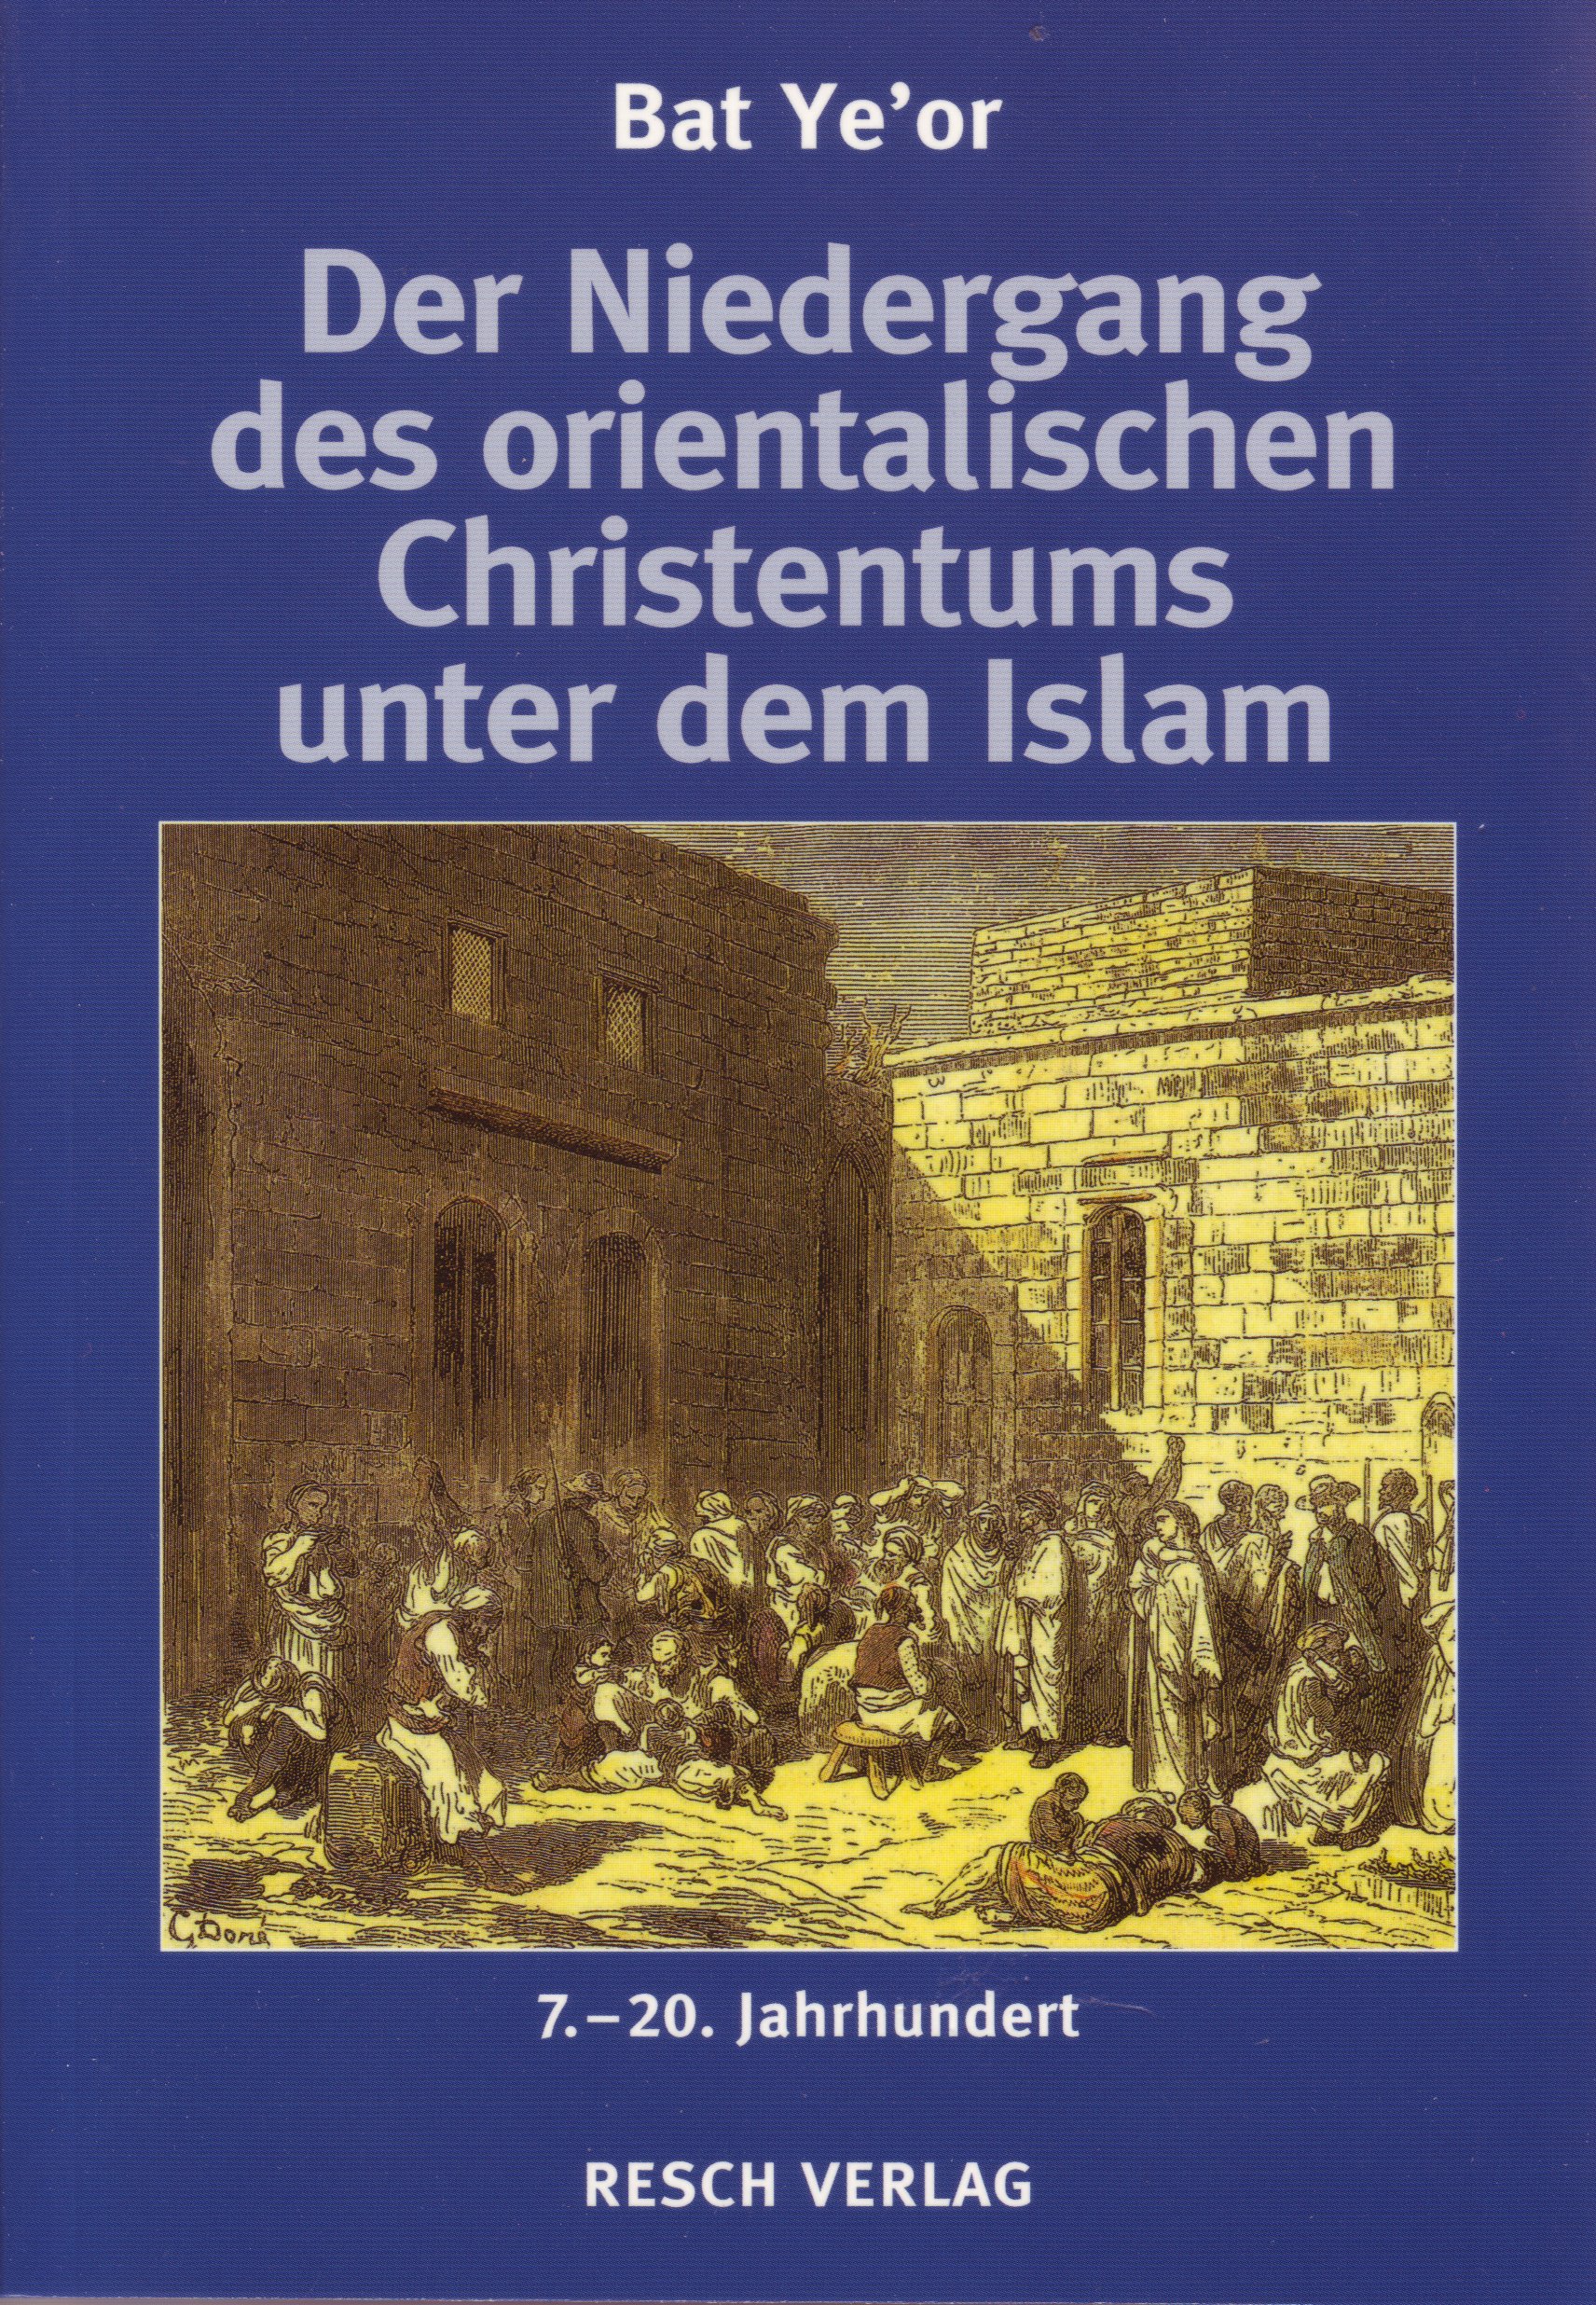 DER NIEDERGANG DES ORIENTALISCHEN CHRISTENTUMS UNTER DEM ISLAM - 7. BIS 20. JAHRHUNDERT - ZWISCHEN DSCHIHAD UND SCHUTZVERTRAG